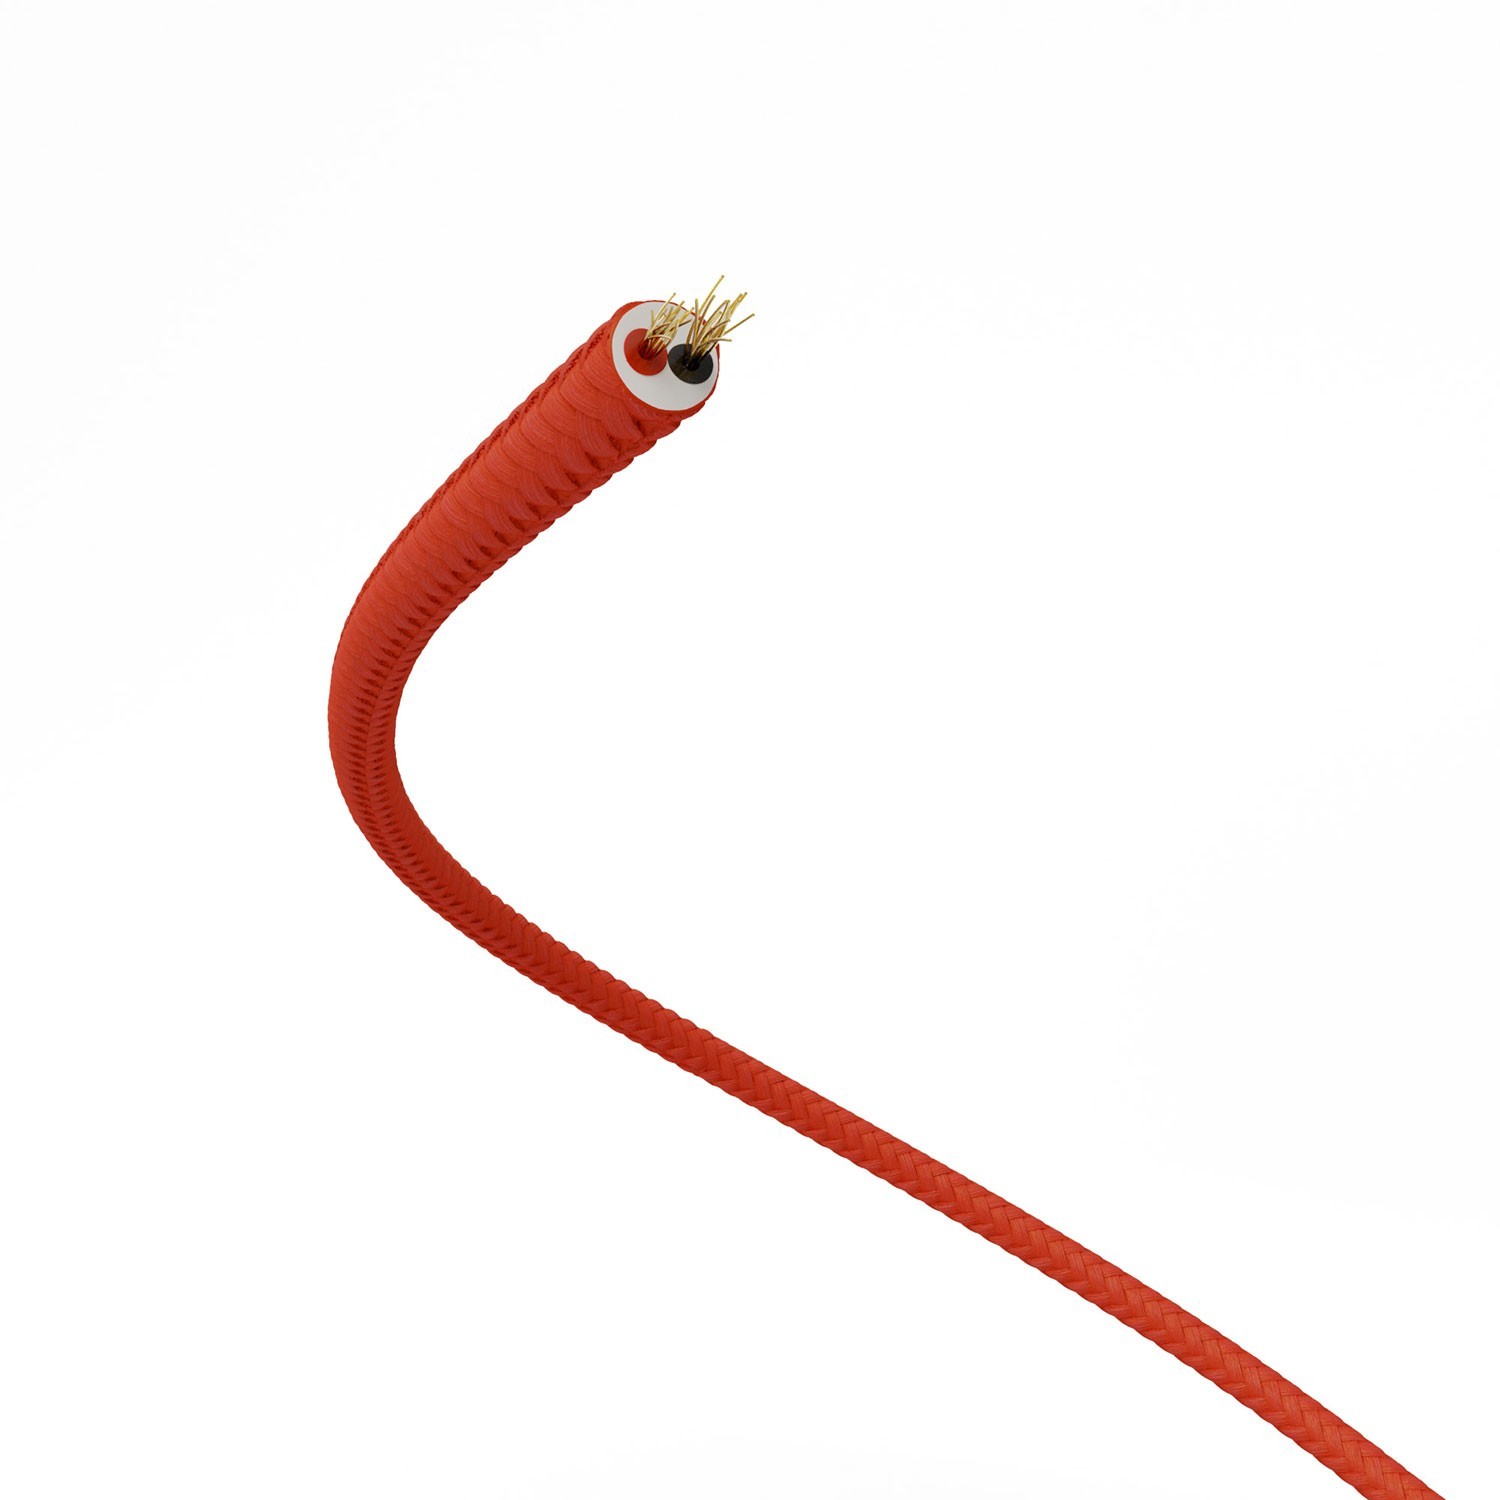 Cable de alimentación Extra Low Voltage revestido de tejido efecto seda Rojo RM09 - 50 m